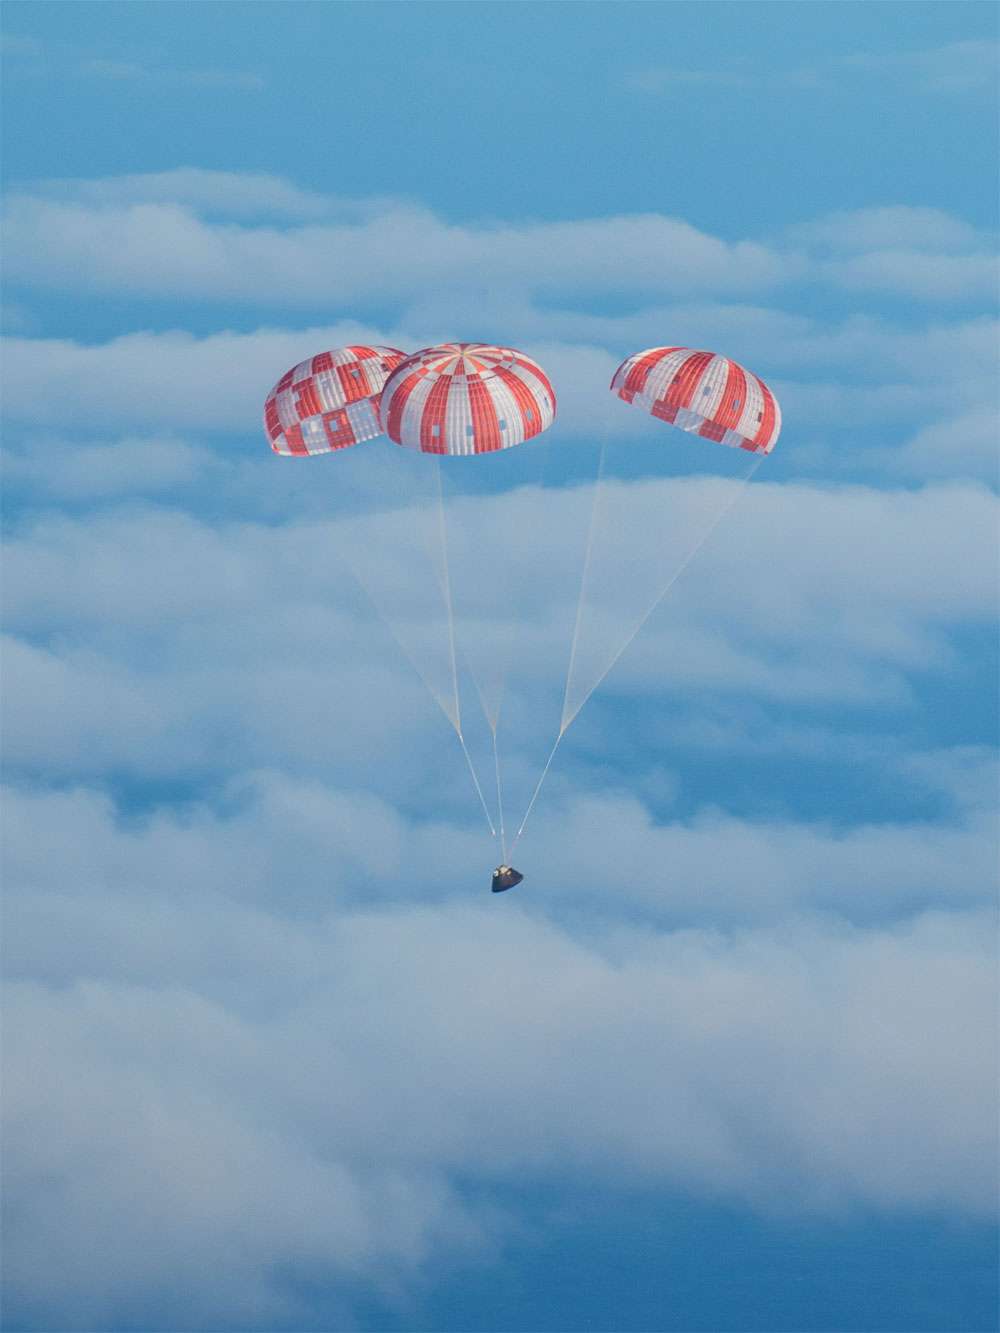 Retour sur Terre de la capsule Orion après son vol orbital. Les trois parachutes sont ici correctement déployés, dans une configuration idéale qui limite le ballant de la capsule. © Nasa